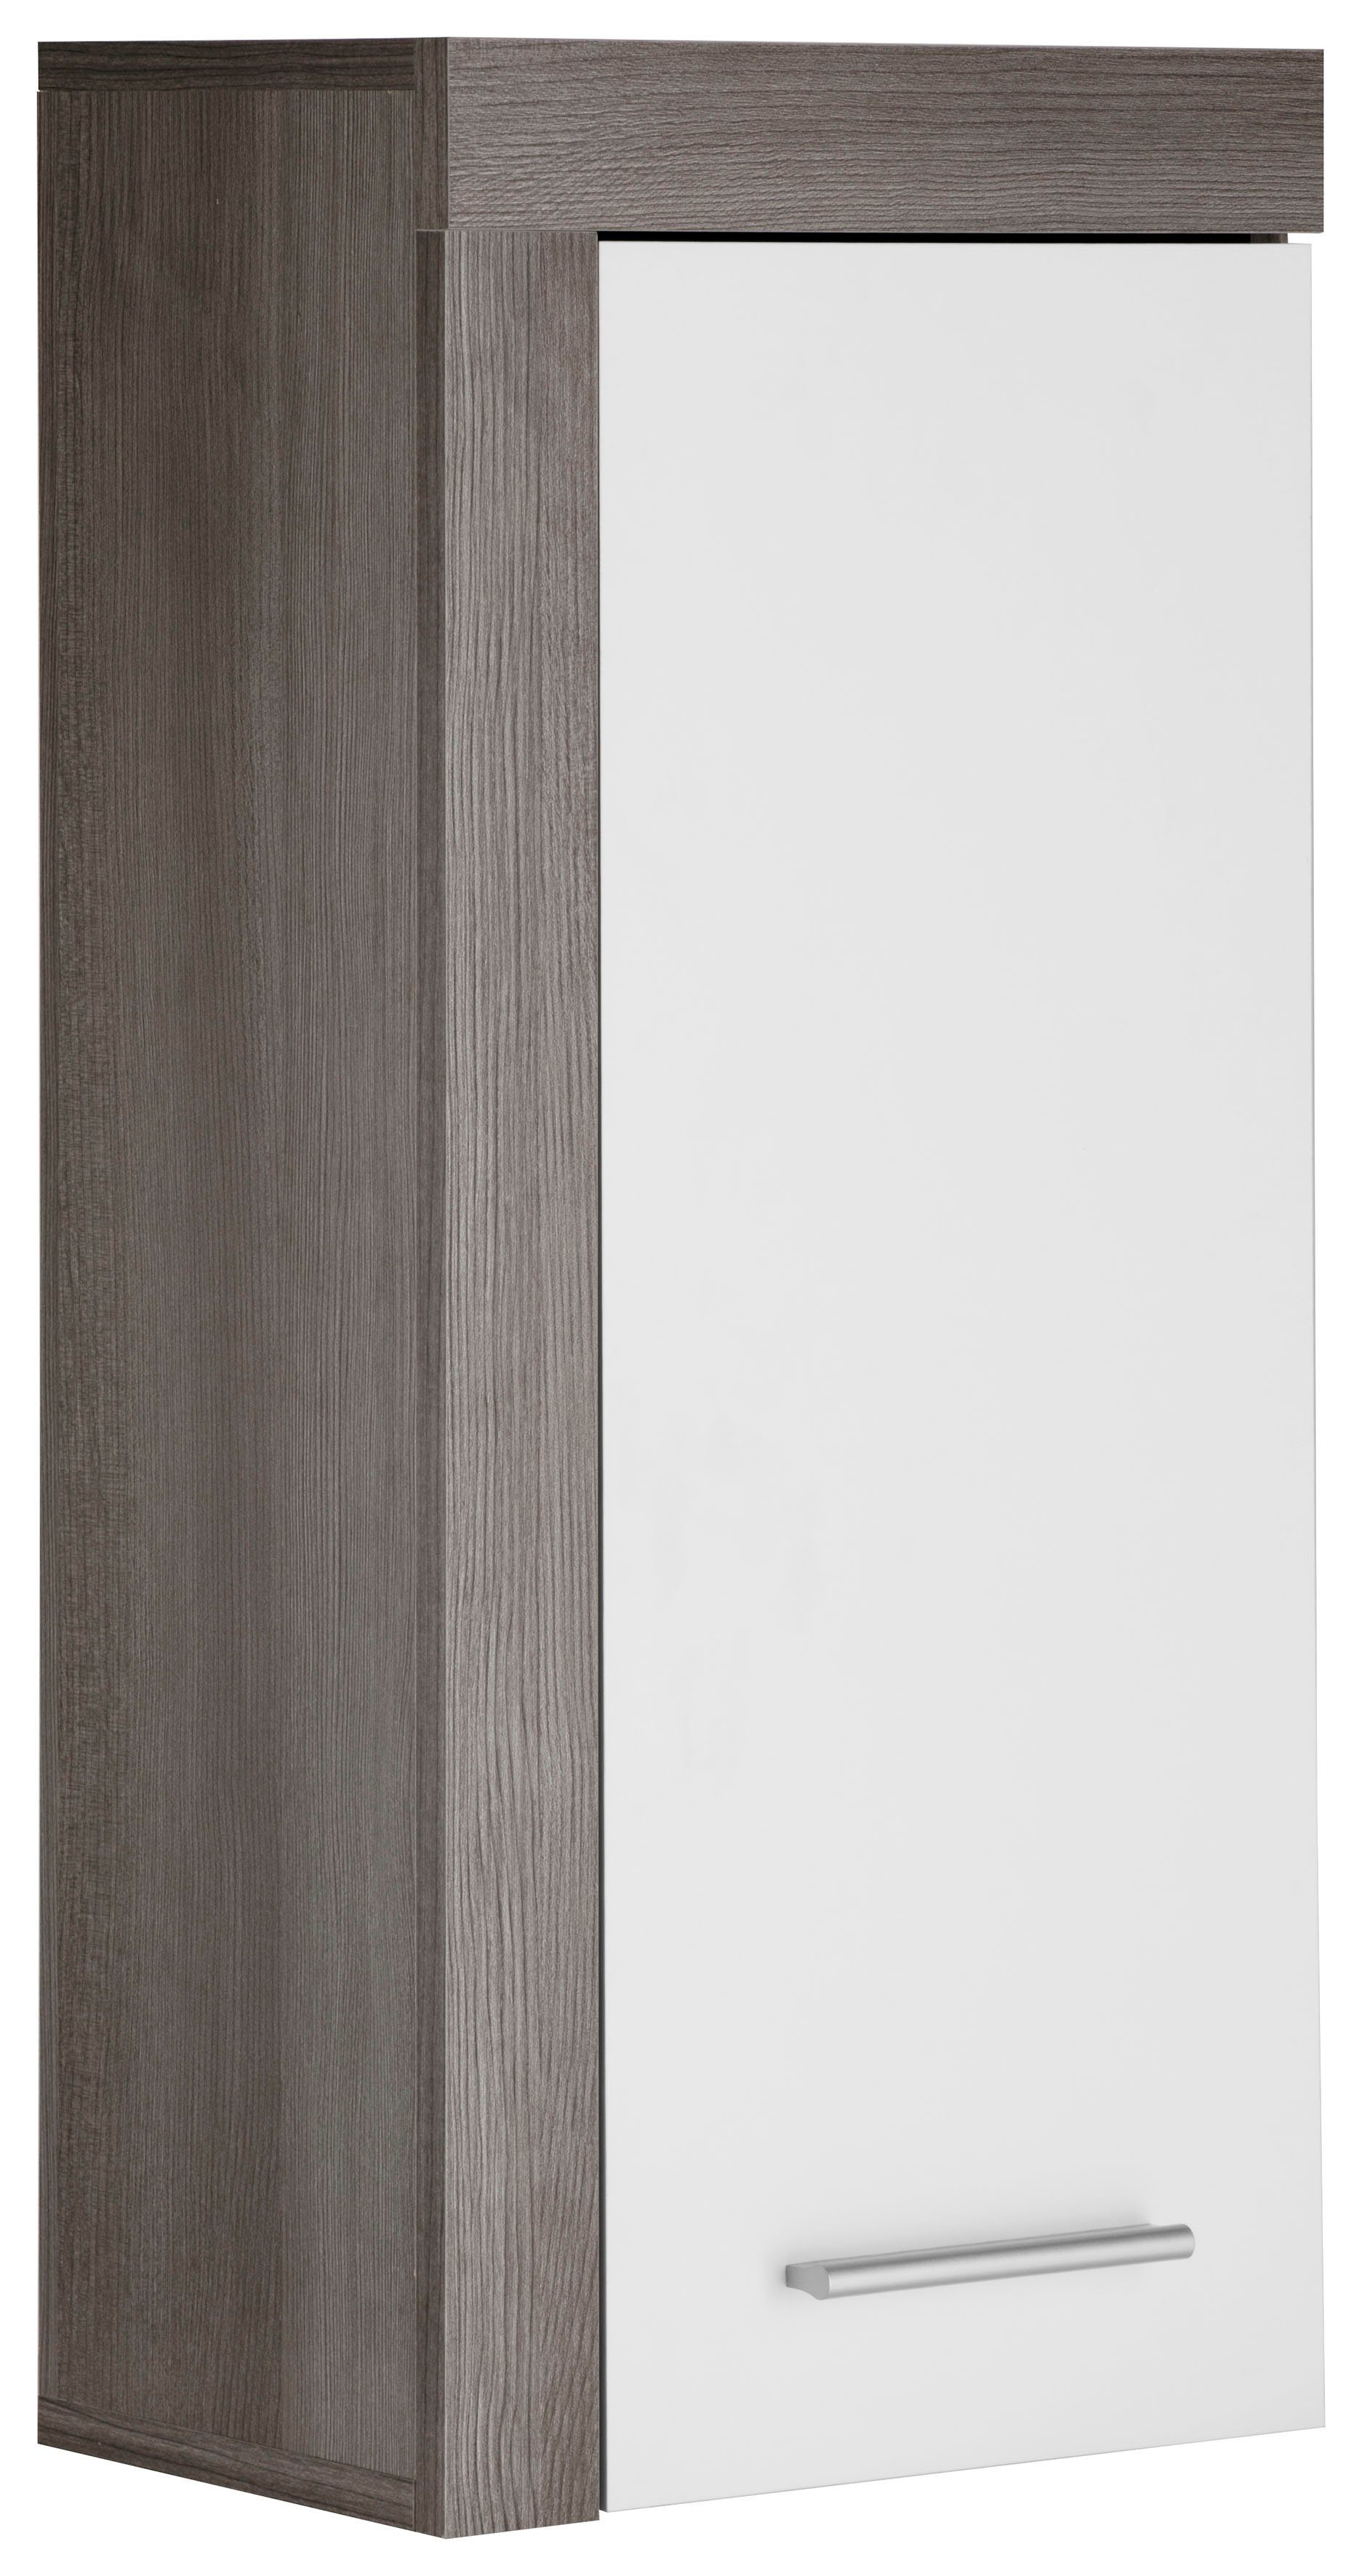 trendteam Hängeschrank Miami mit Rahmenoptik in Holztönen, Breite 36 cm